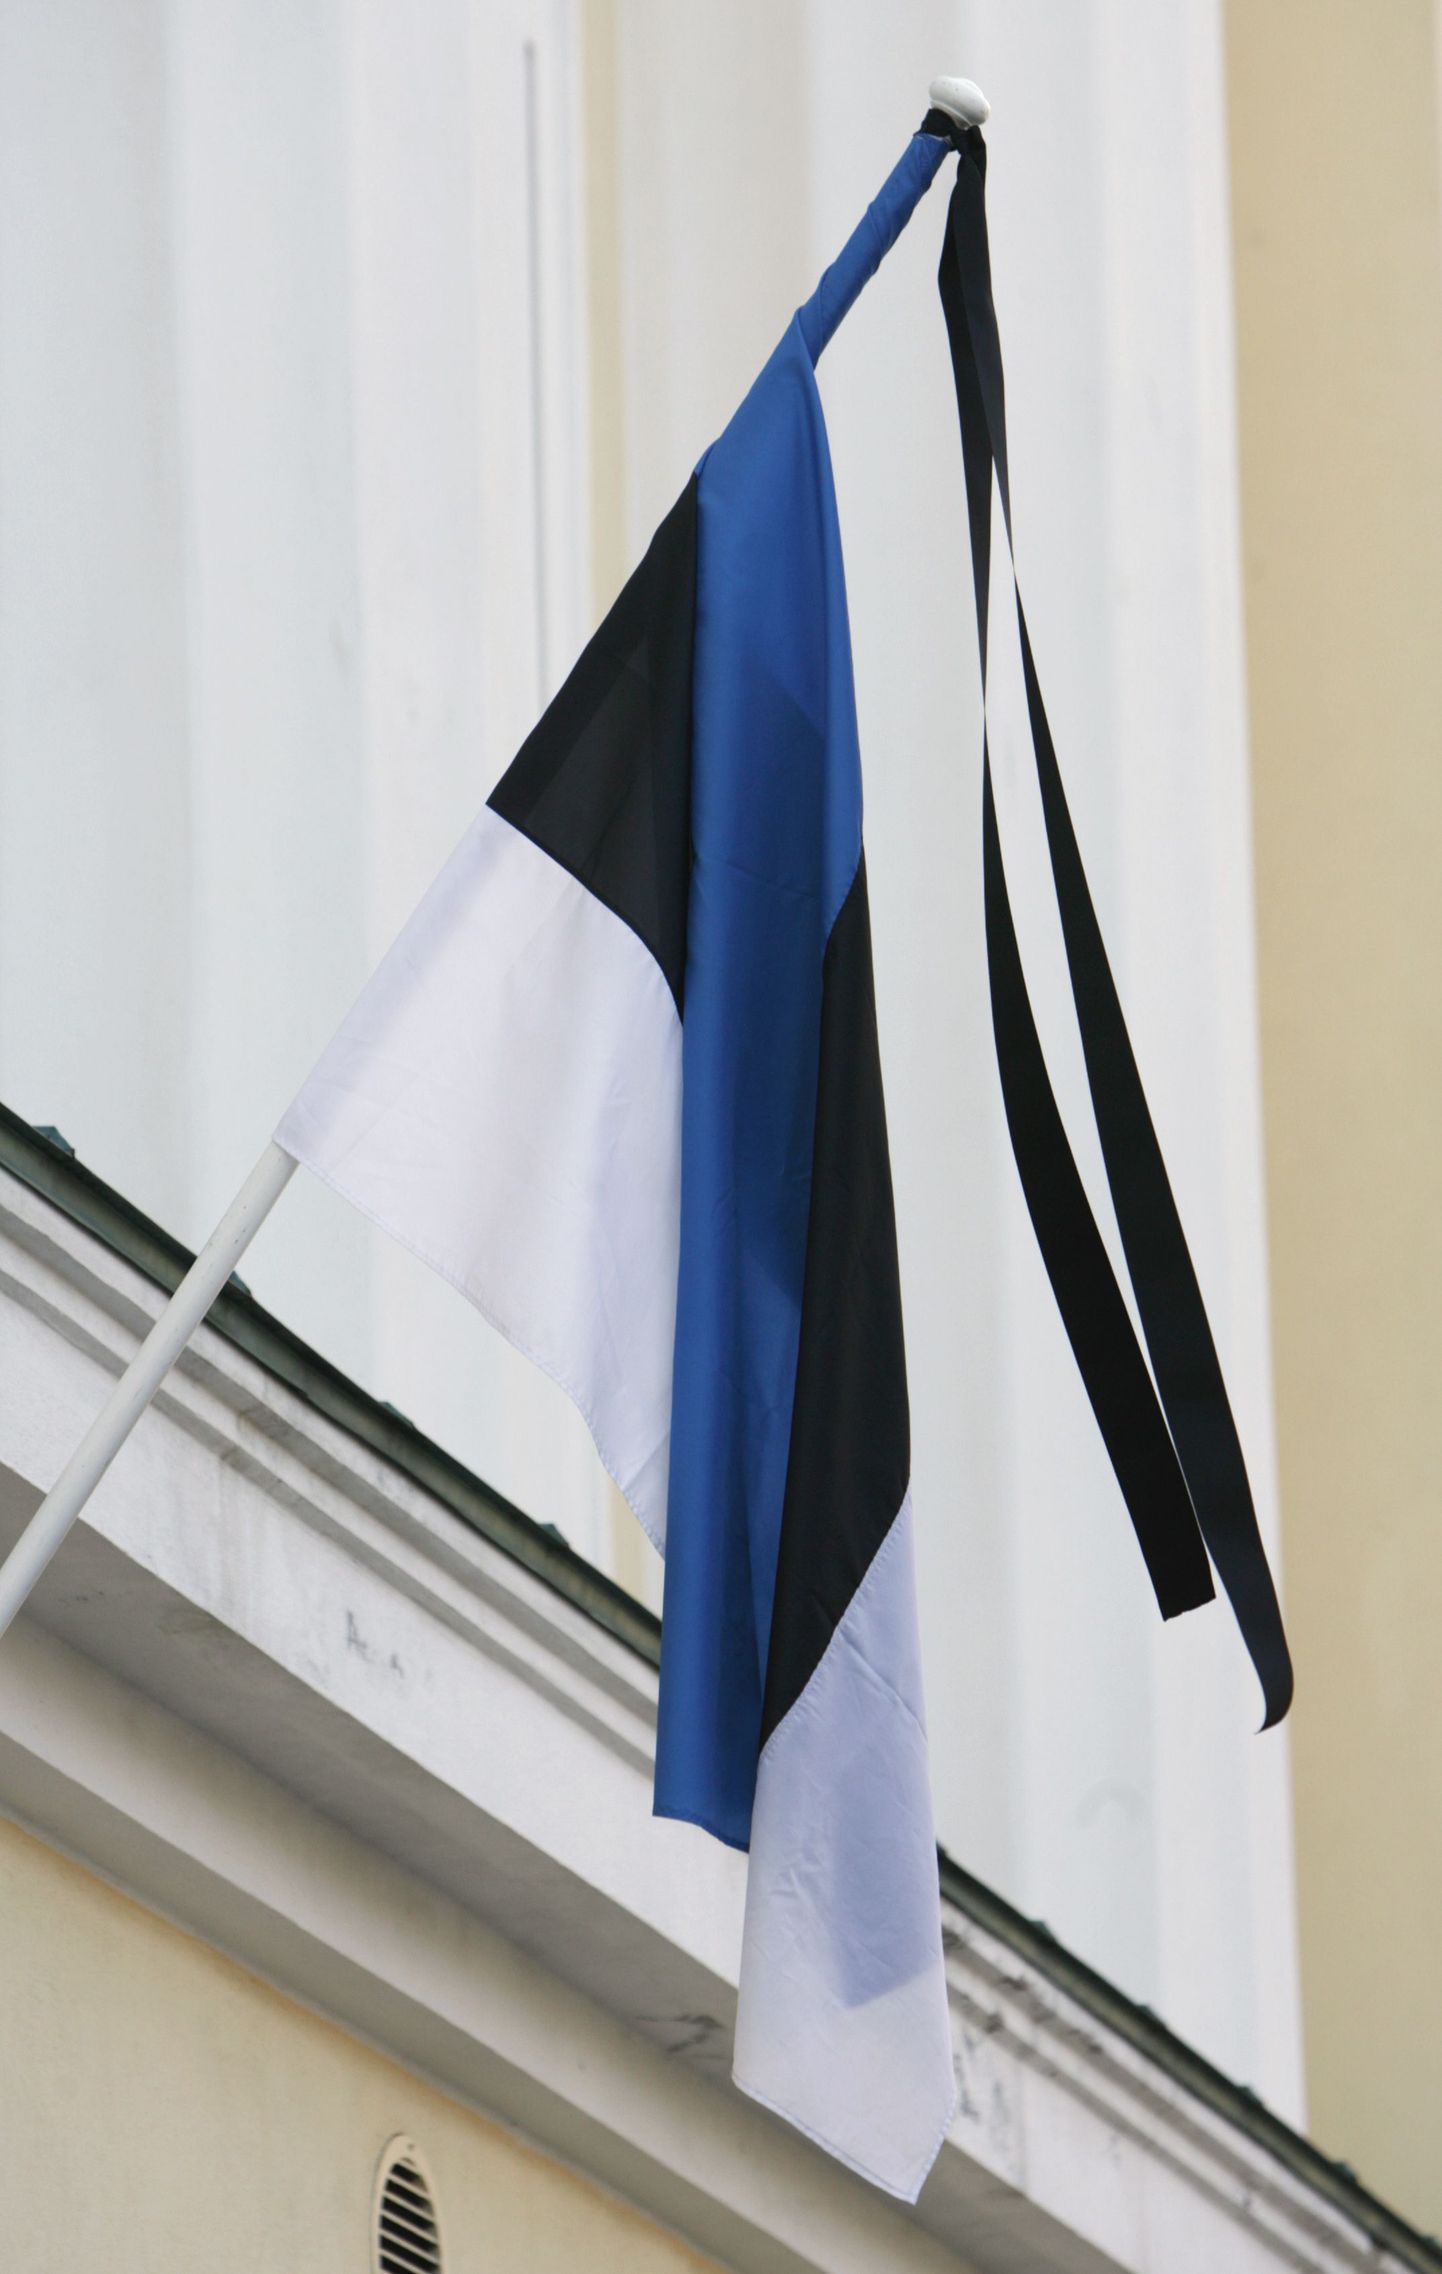 Leinalipuna heisatud Eesti riigilipp.